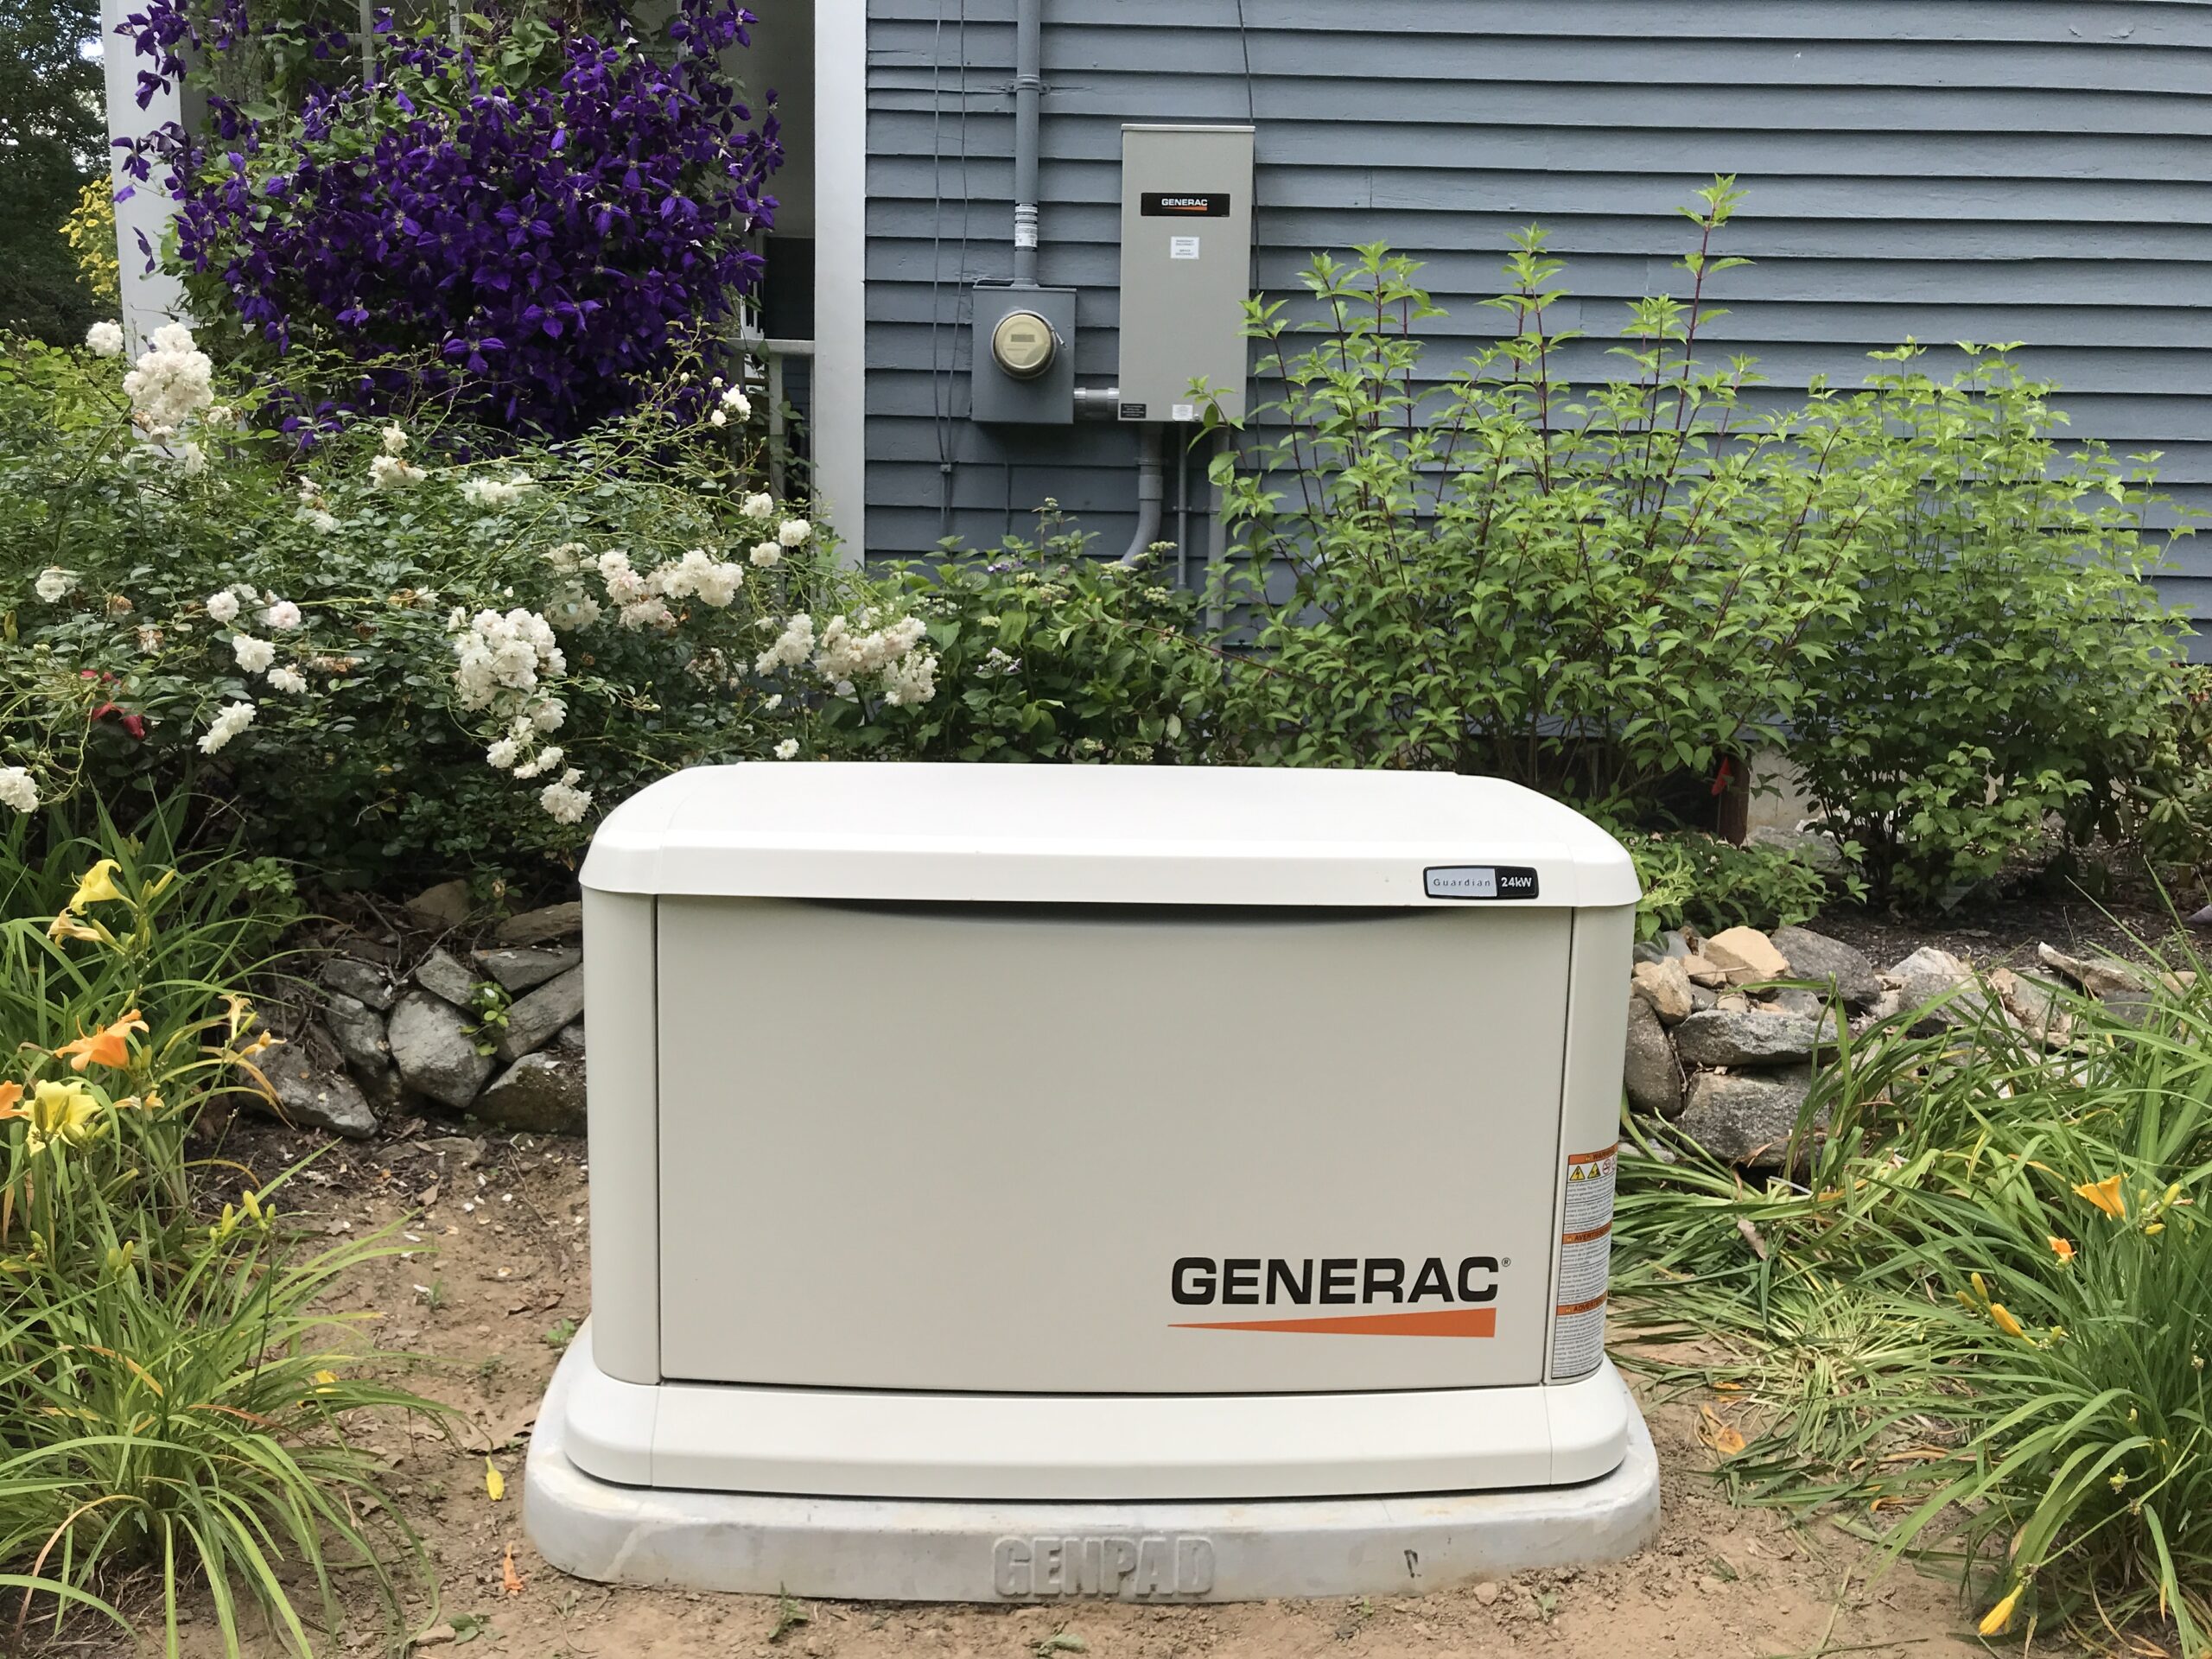 Generac generator in the garden